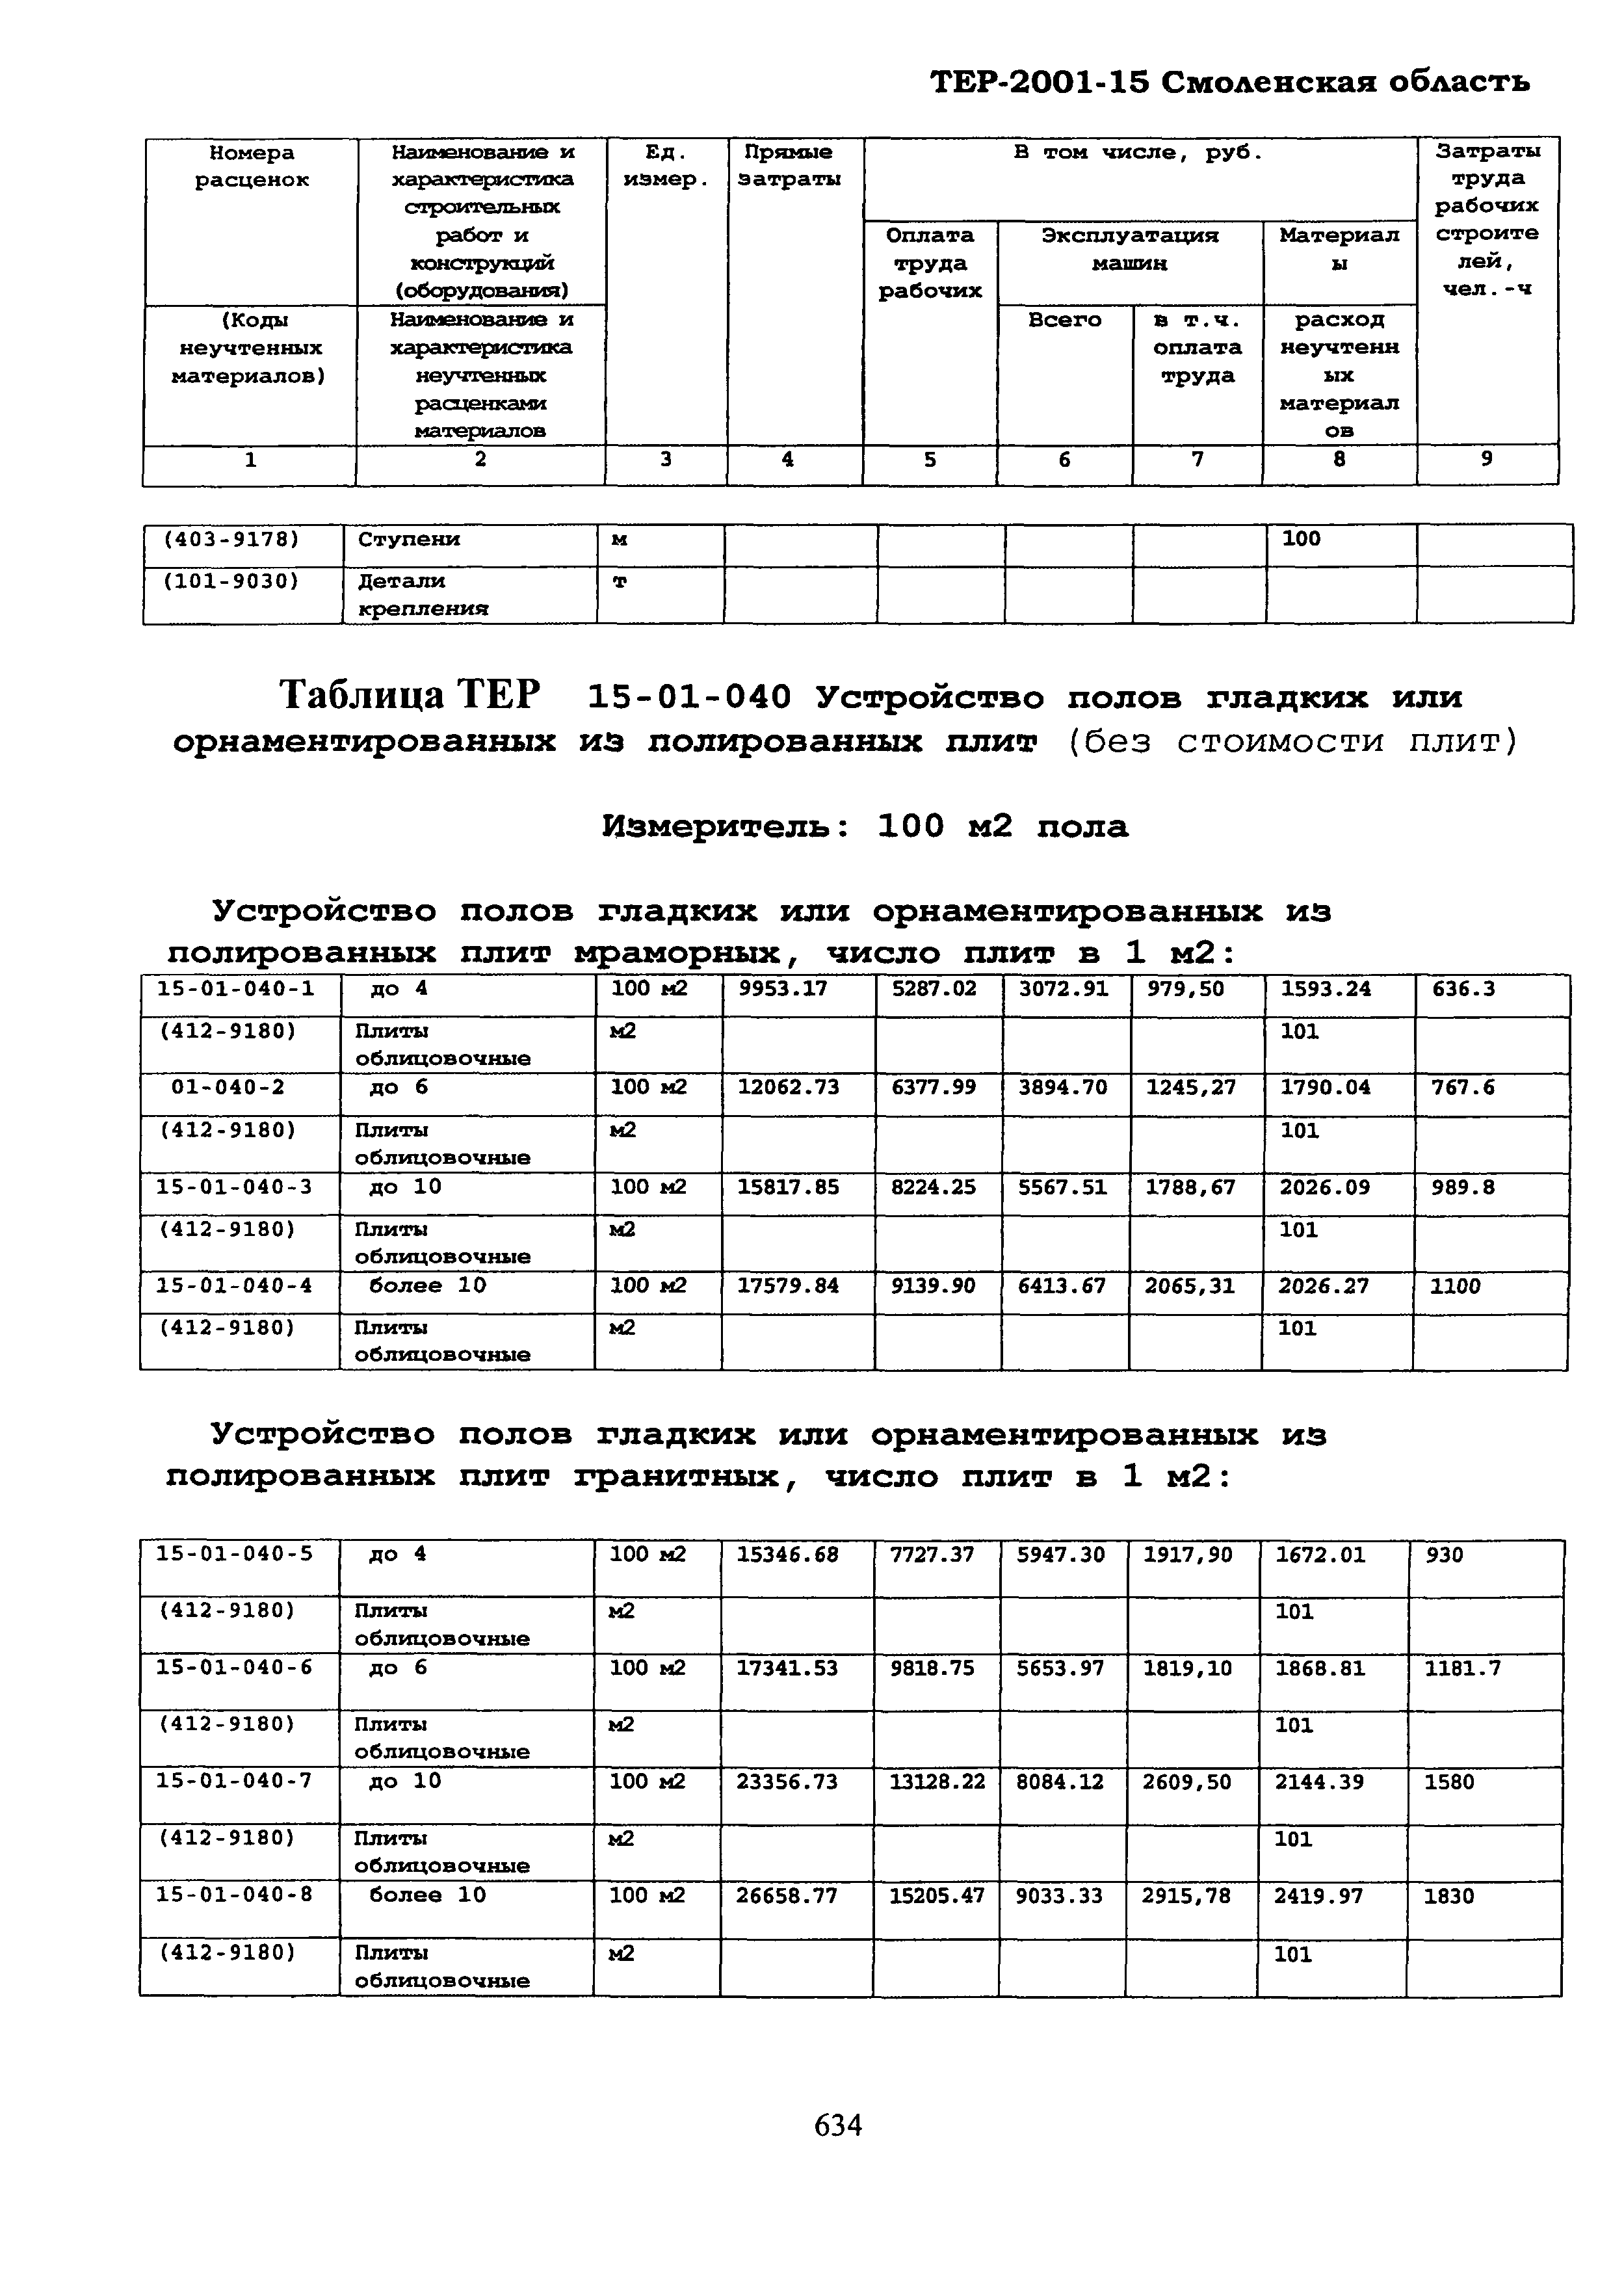 ТЕР Смоленская область 2001-15